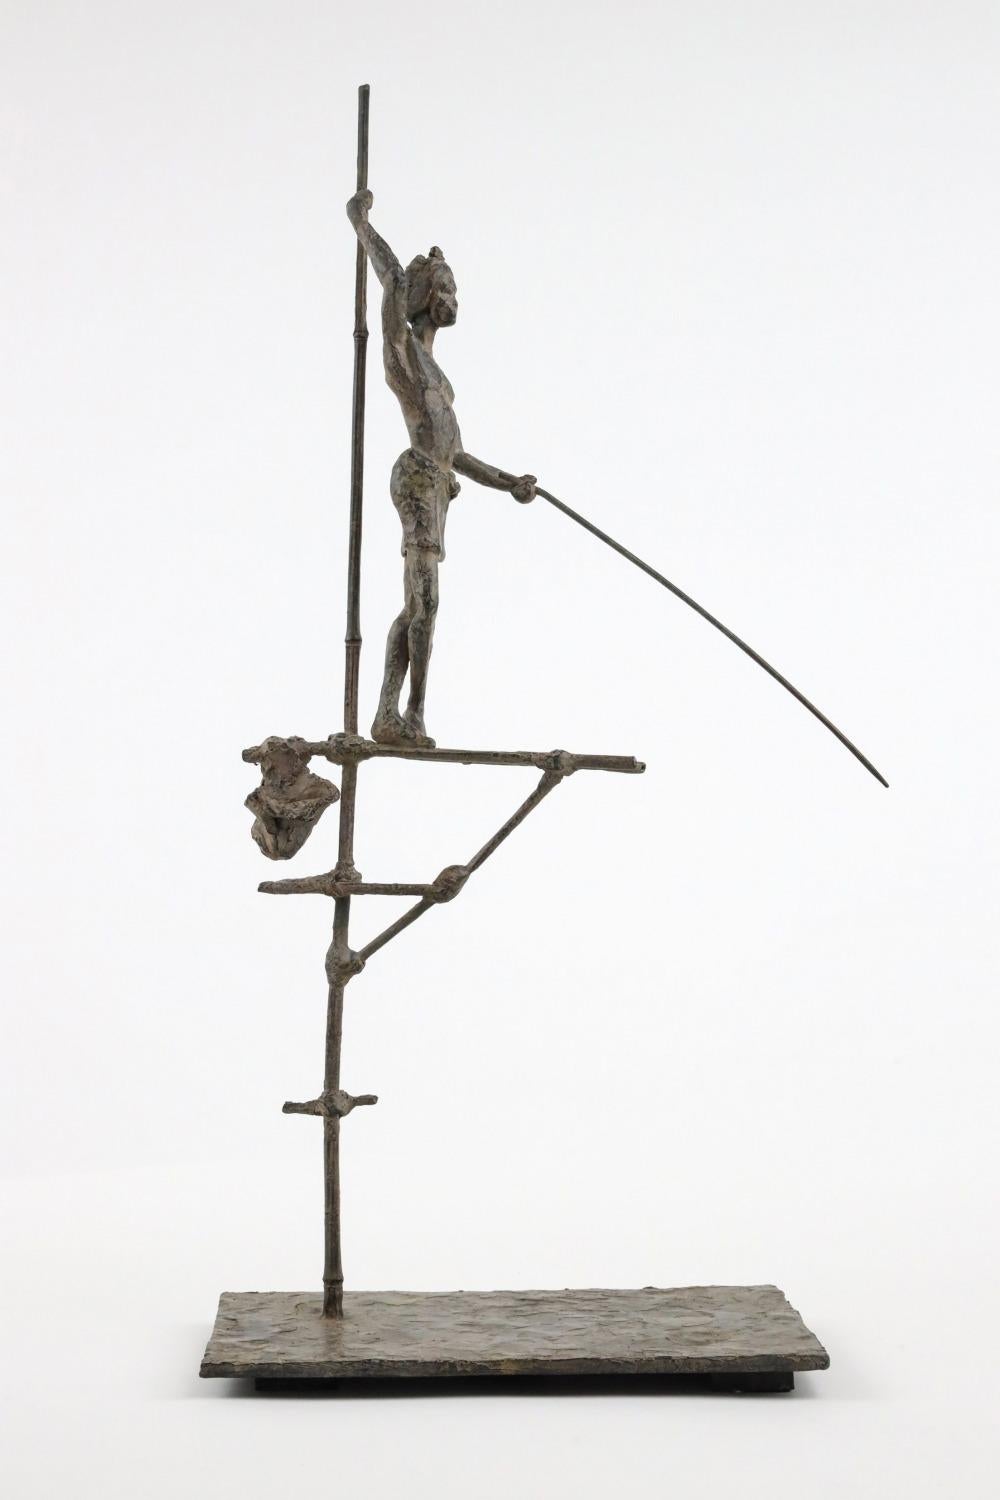 Pêcheur sur échasses II est une sculpture en bronze de l'artiste contemporaine française Marine de Soos, dont les dimensions sont de 50 × 24 × 21 cm (19,7 × 9,4 × 8,3 in). 
La sculpture est signée et numérotée, elle fait partie d'une édition limitée